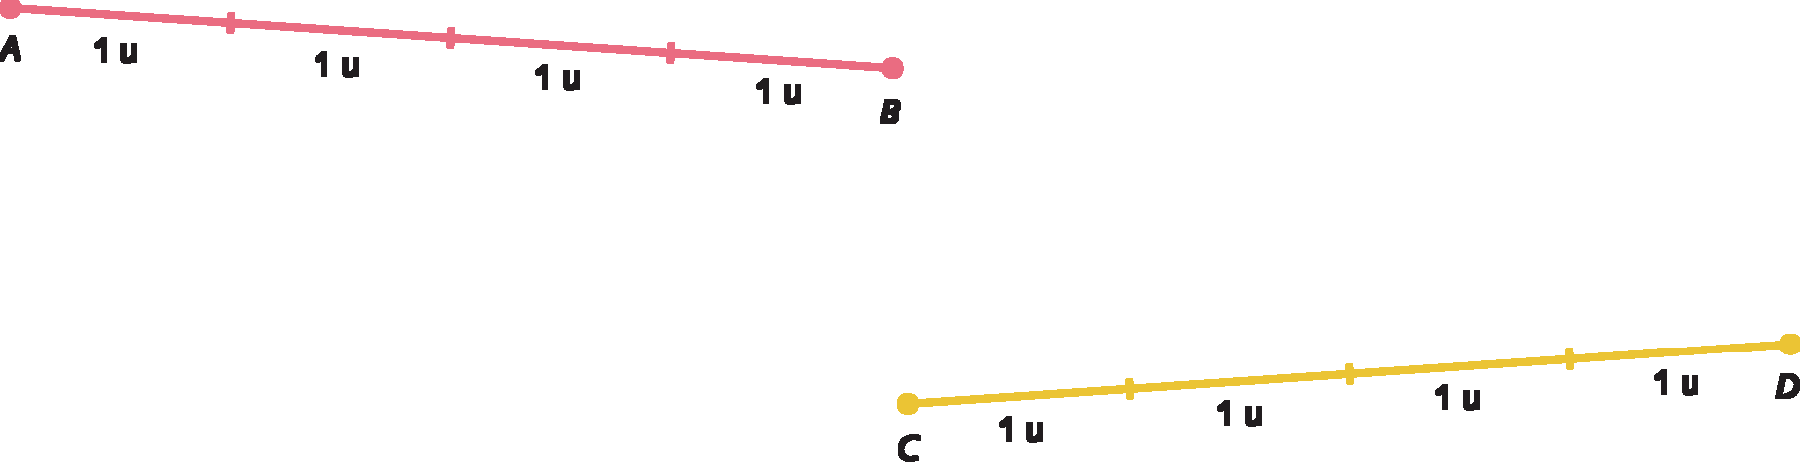 Figura geométrica. À esquerda, segmento de reta vermelho com extremidades nos pontos A e B dividido em 4 partes de mesma medida de comprimento. Abaixo de cada parte há o número um acompanhado de um espaço e da letra u minúscula. O segmento de reta está levemente inclinado, o lado com extremidade no ponto A à esquerda está acima do ponto B à direita. À direita, segmento de reta amarelo com extremidades nos pontos C e D dividido em 4 partes de mesma medida de comprimento. Abaixo de cada parte há o número um acompanhado de um espaço e da letra u minúscula. O segmento de reta está levemente inclinado, o lado com extremidade no ponto C à esquerda está abaixo do ponto D à direita.